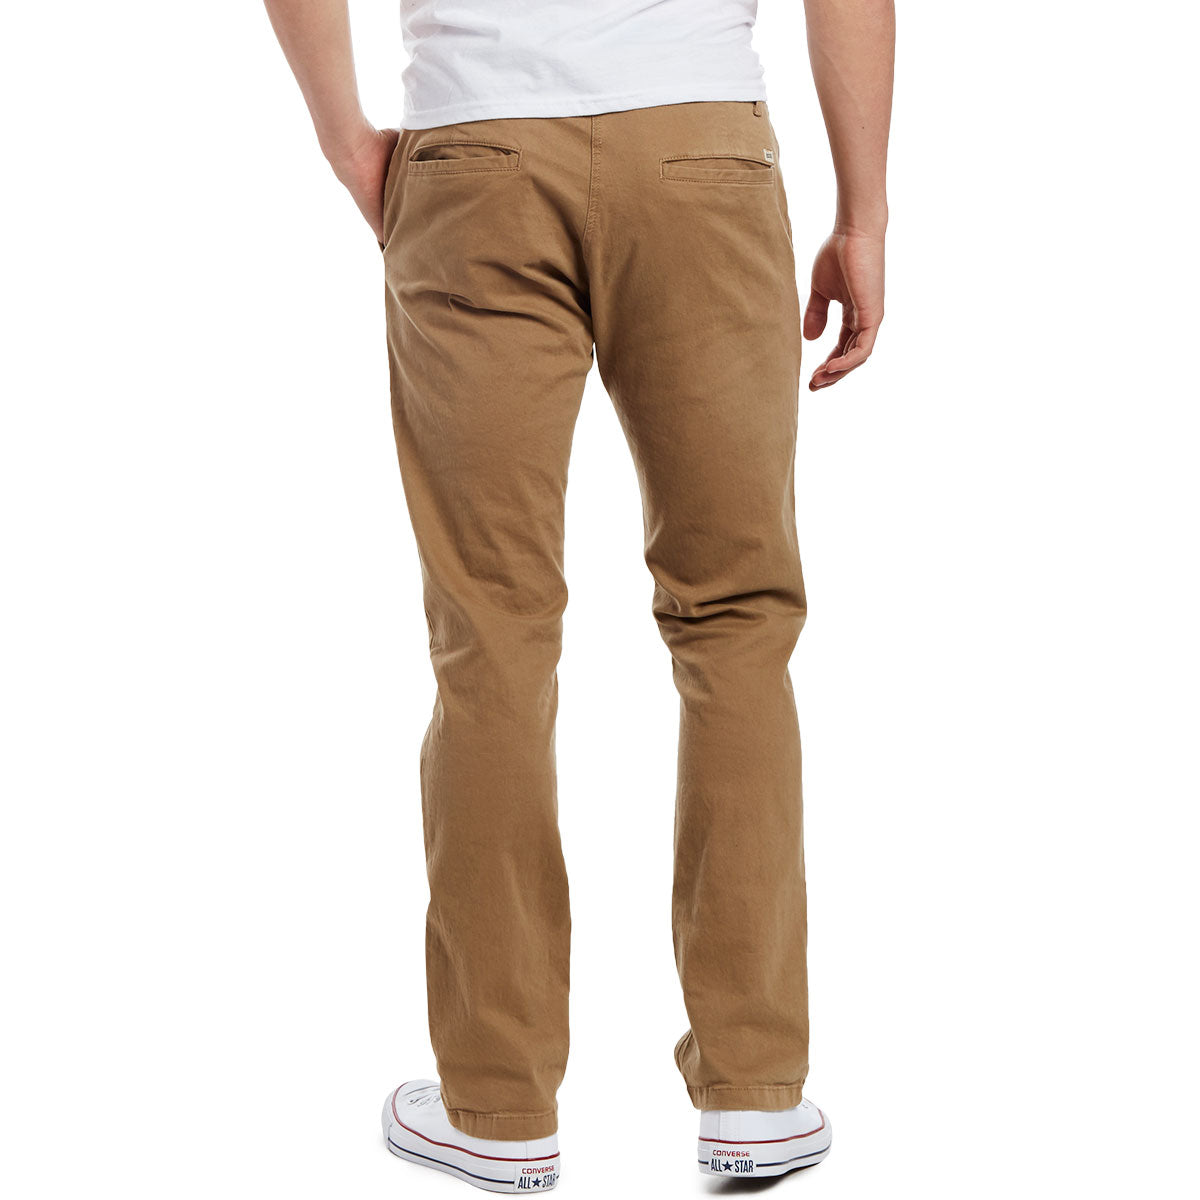 CCS Straight Fit Chino Pants - Khaki image 3